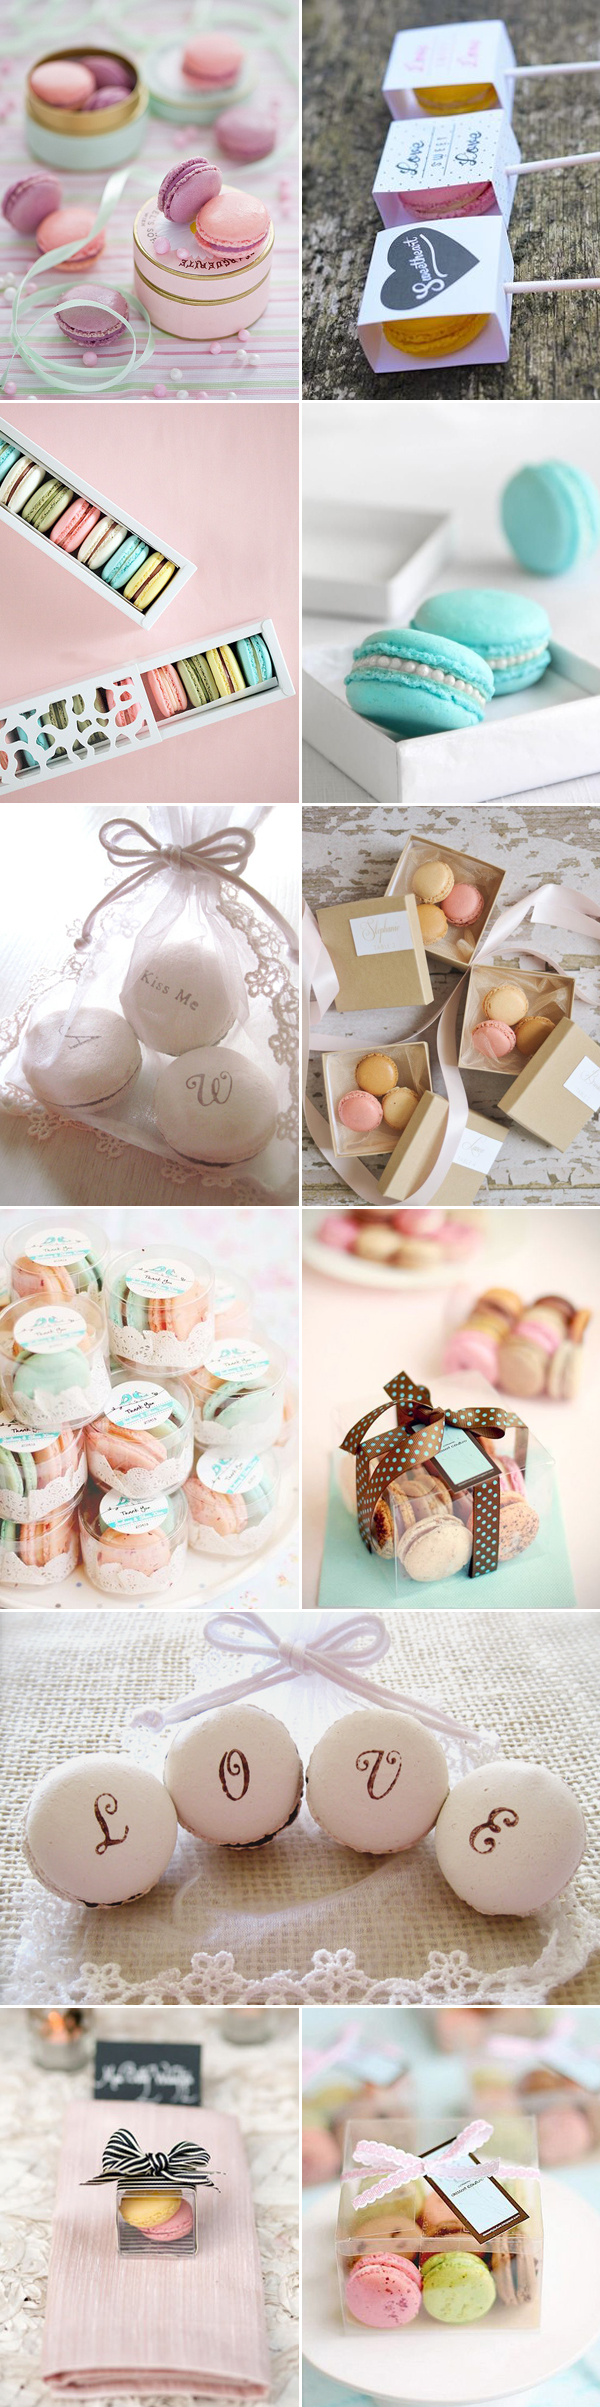 pastel macaron wedding favors